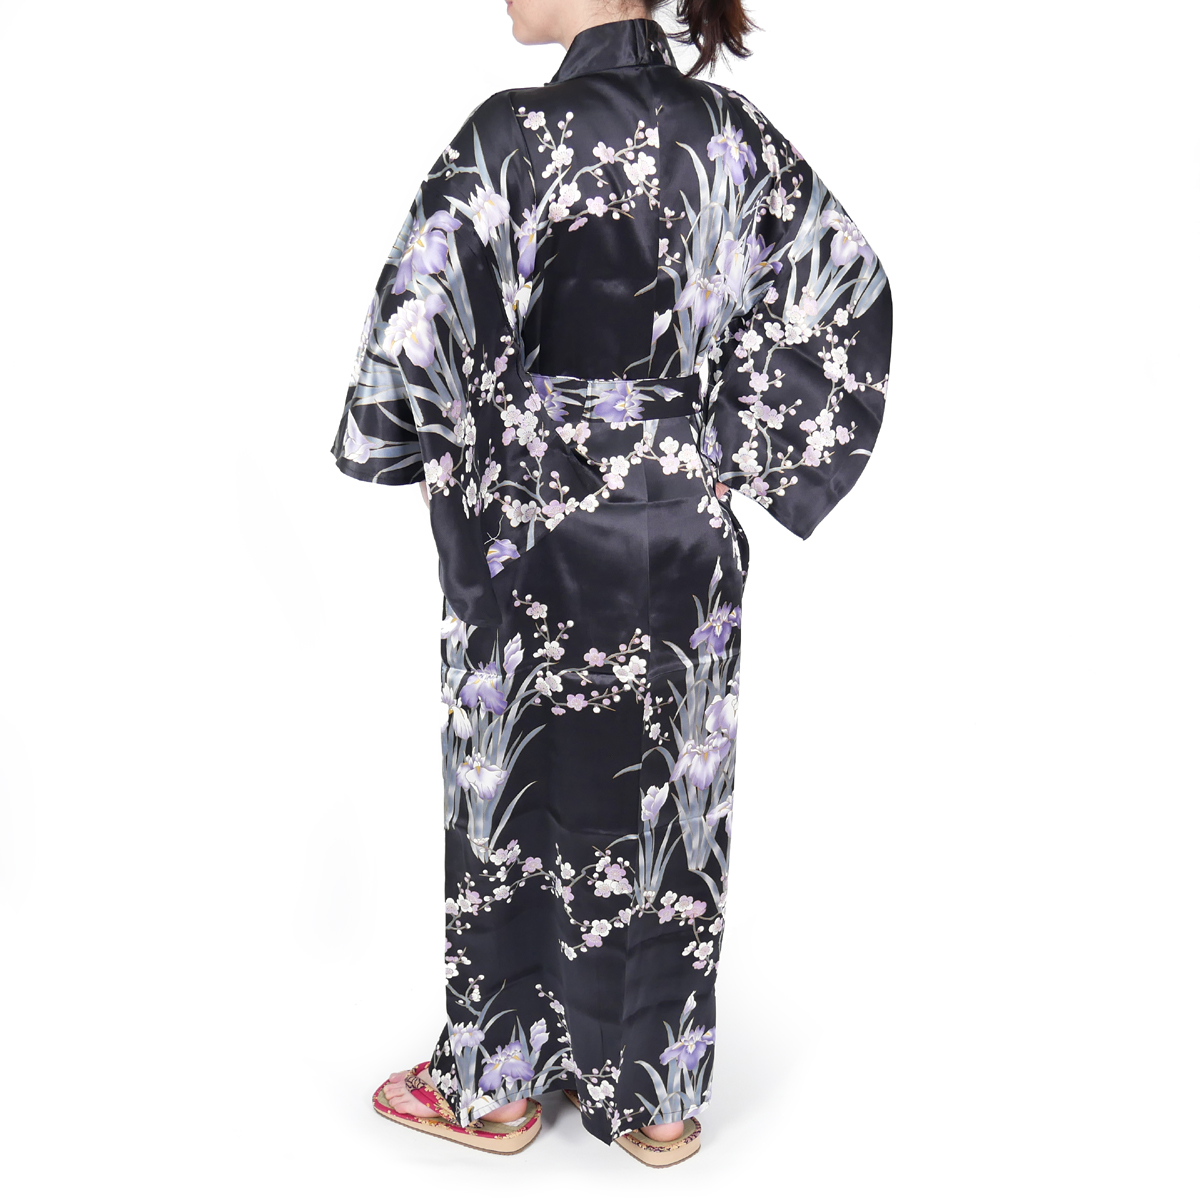 kimono yukata japonais noir en soie fleurs iris prune pour femme